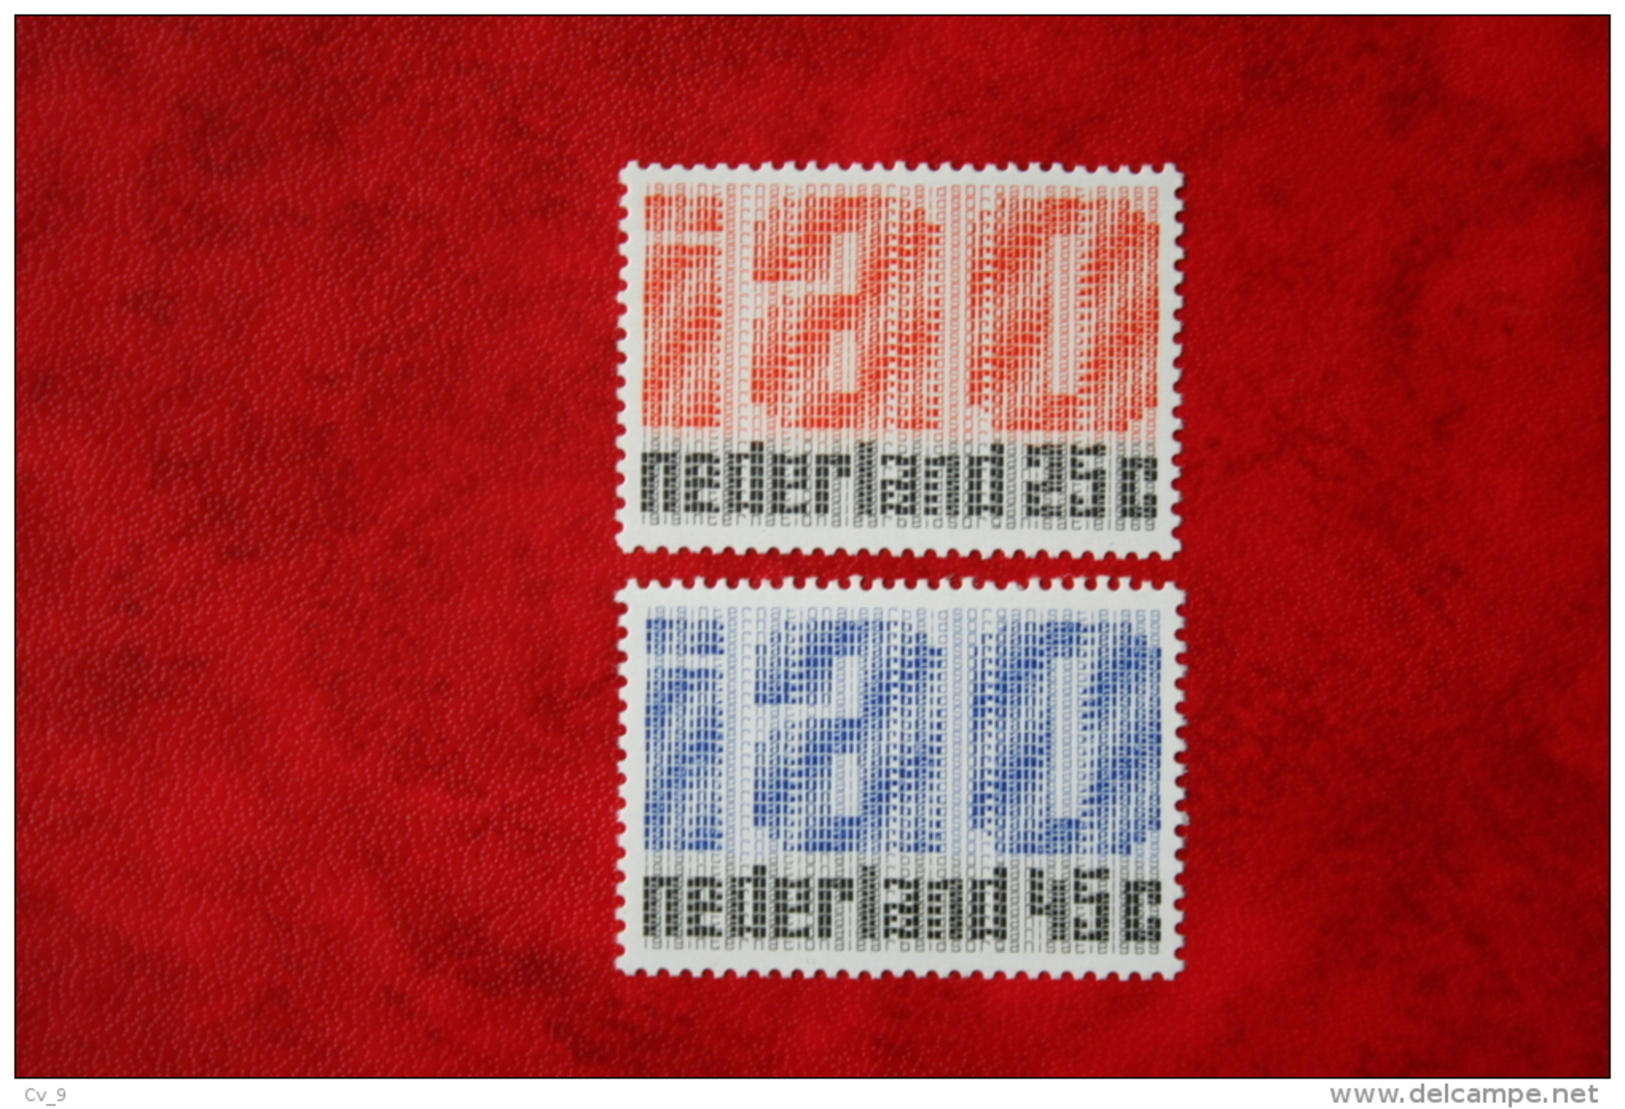 IAO Zegels NVPH 918-919 (Mi 912-913); 1969 POSTFRIS / MNH ** NEDERLAND / NIEDERLANDE - Ungebraucht